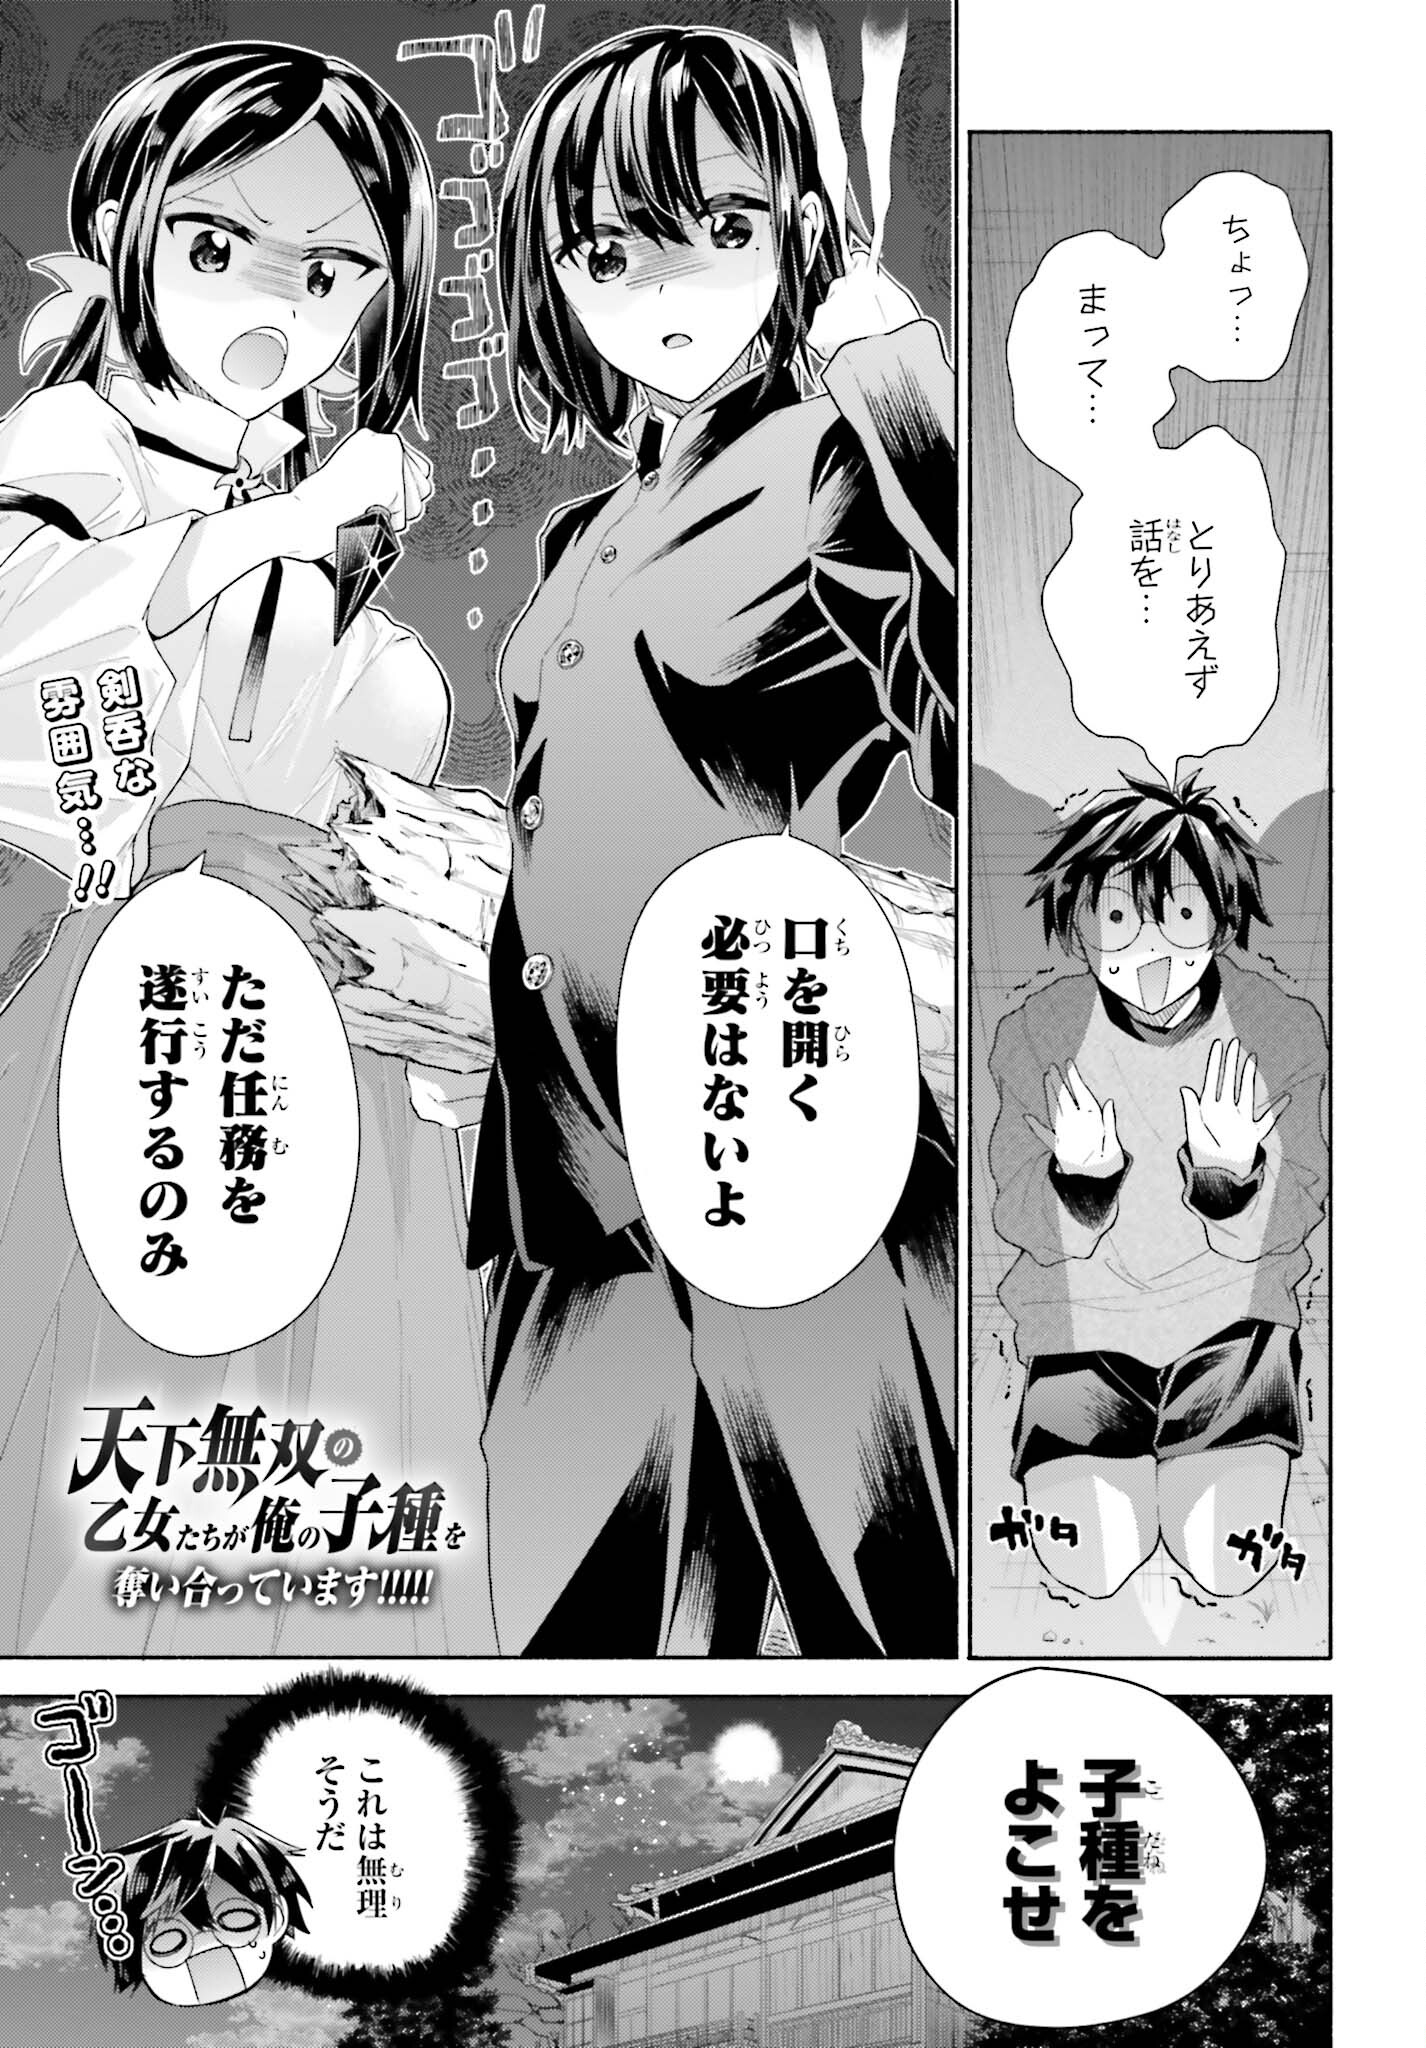 Tenka Musou no Otome-tachi ga Ore no Kodane wo Ubaiatteimasu!!!!! - Chapter 3 - Page 1